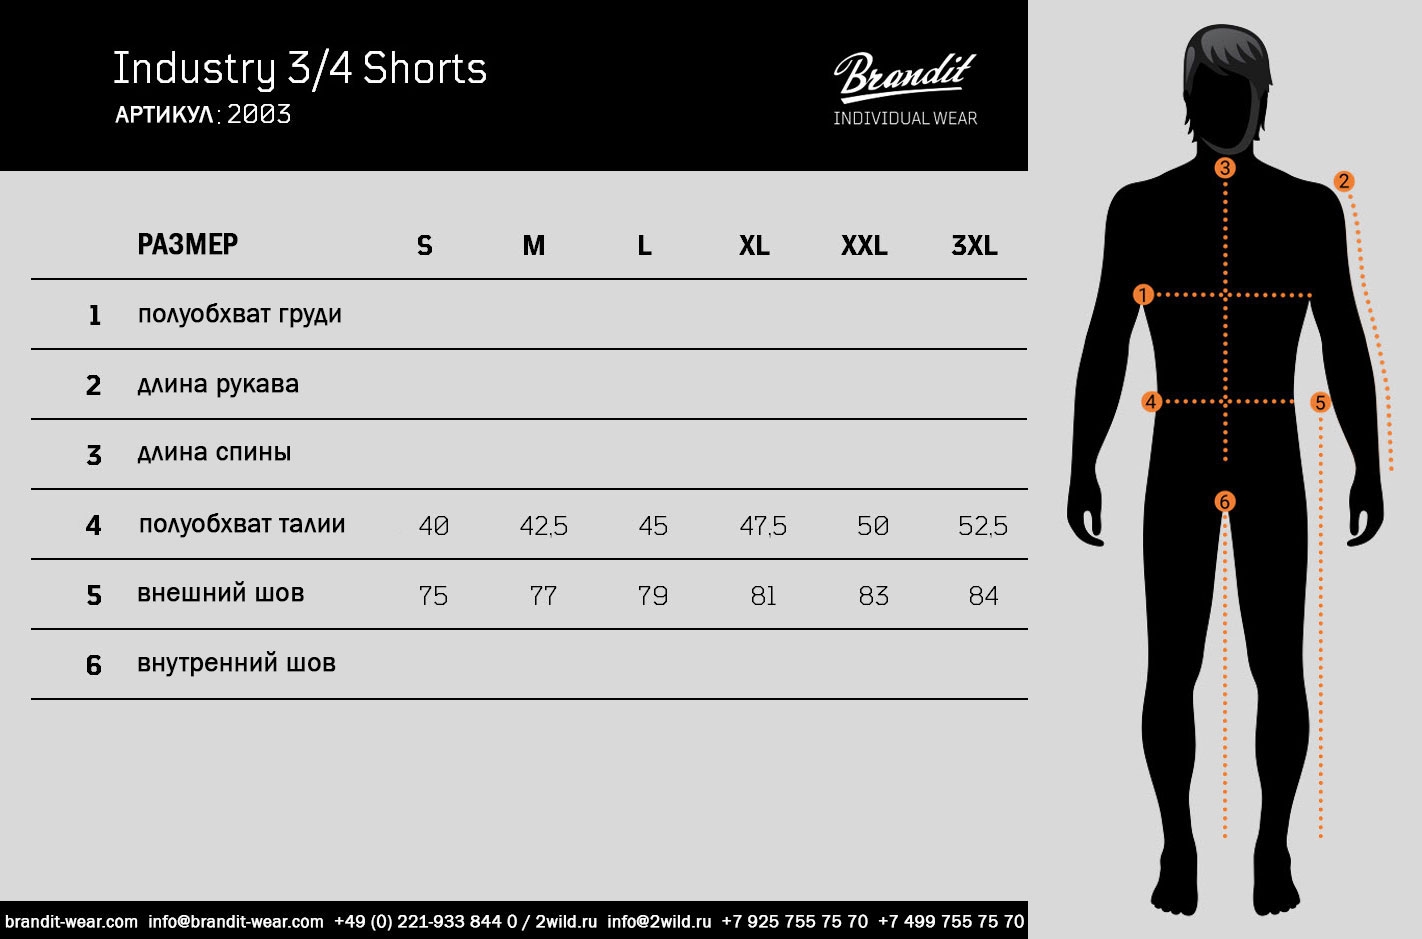 Шорты Brandit Industry 3/4 Shorts размеры